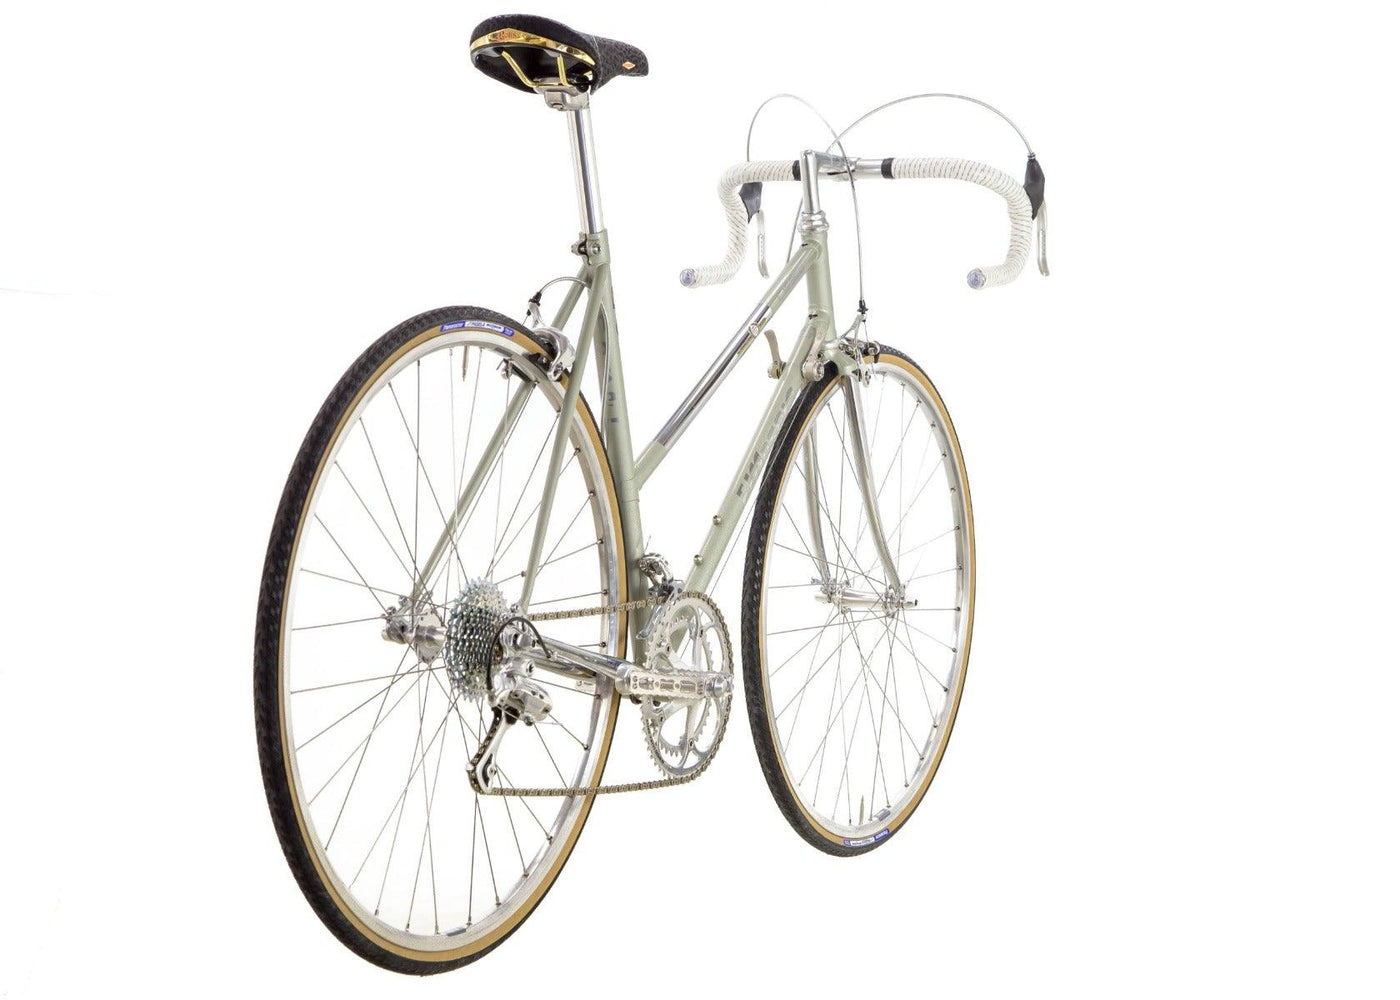 F. Moser Classe NOS Ladies Road Bike - Steel Vintage Bikes